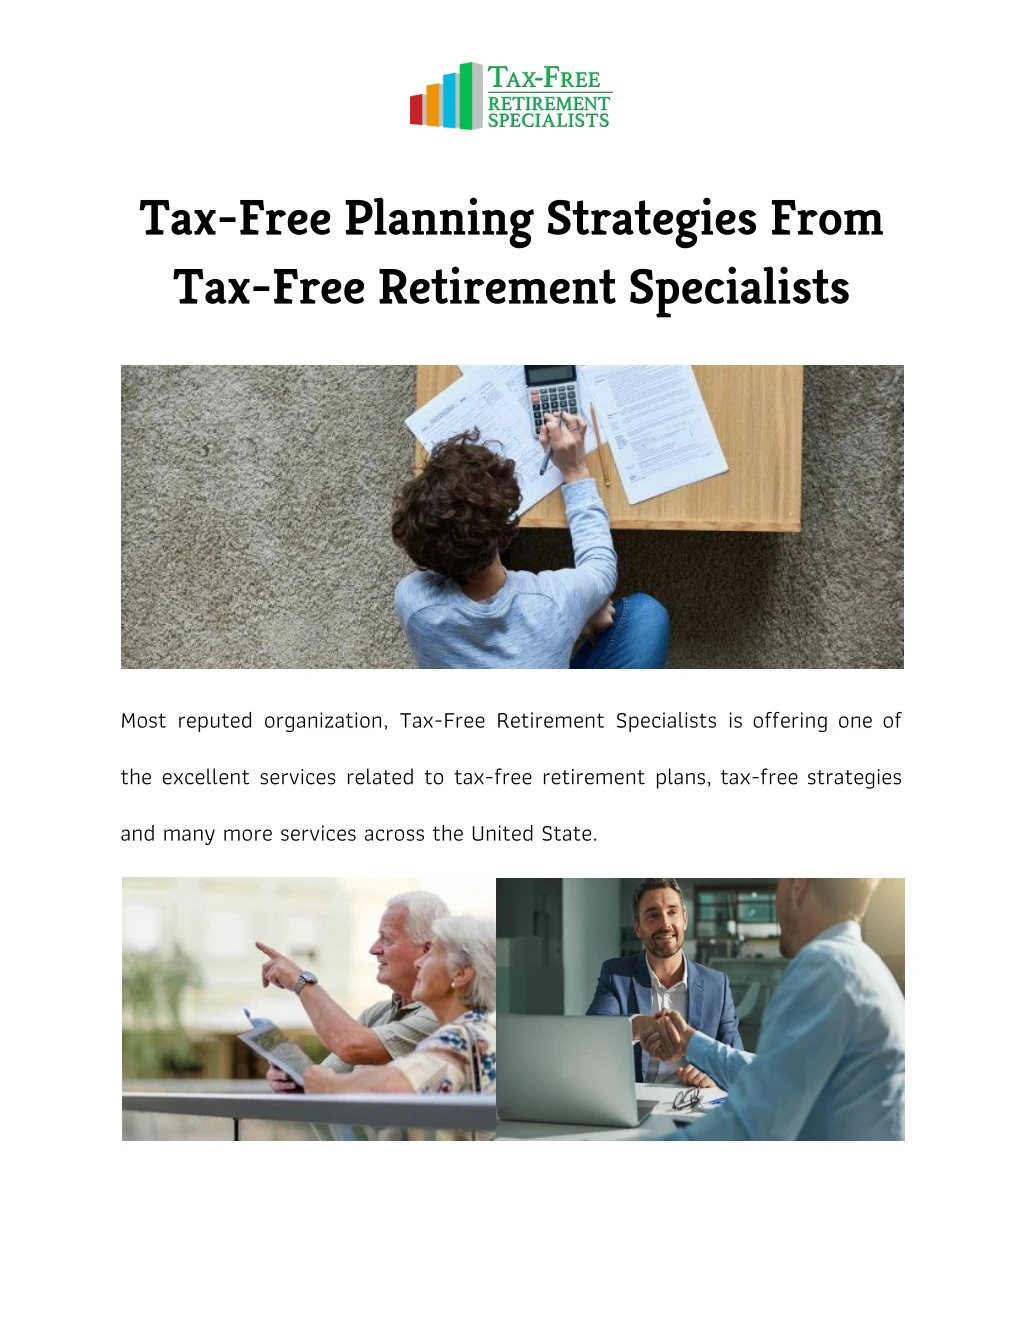 tax free planning strategies from tax free